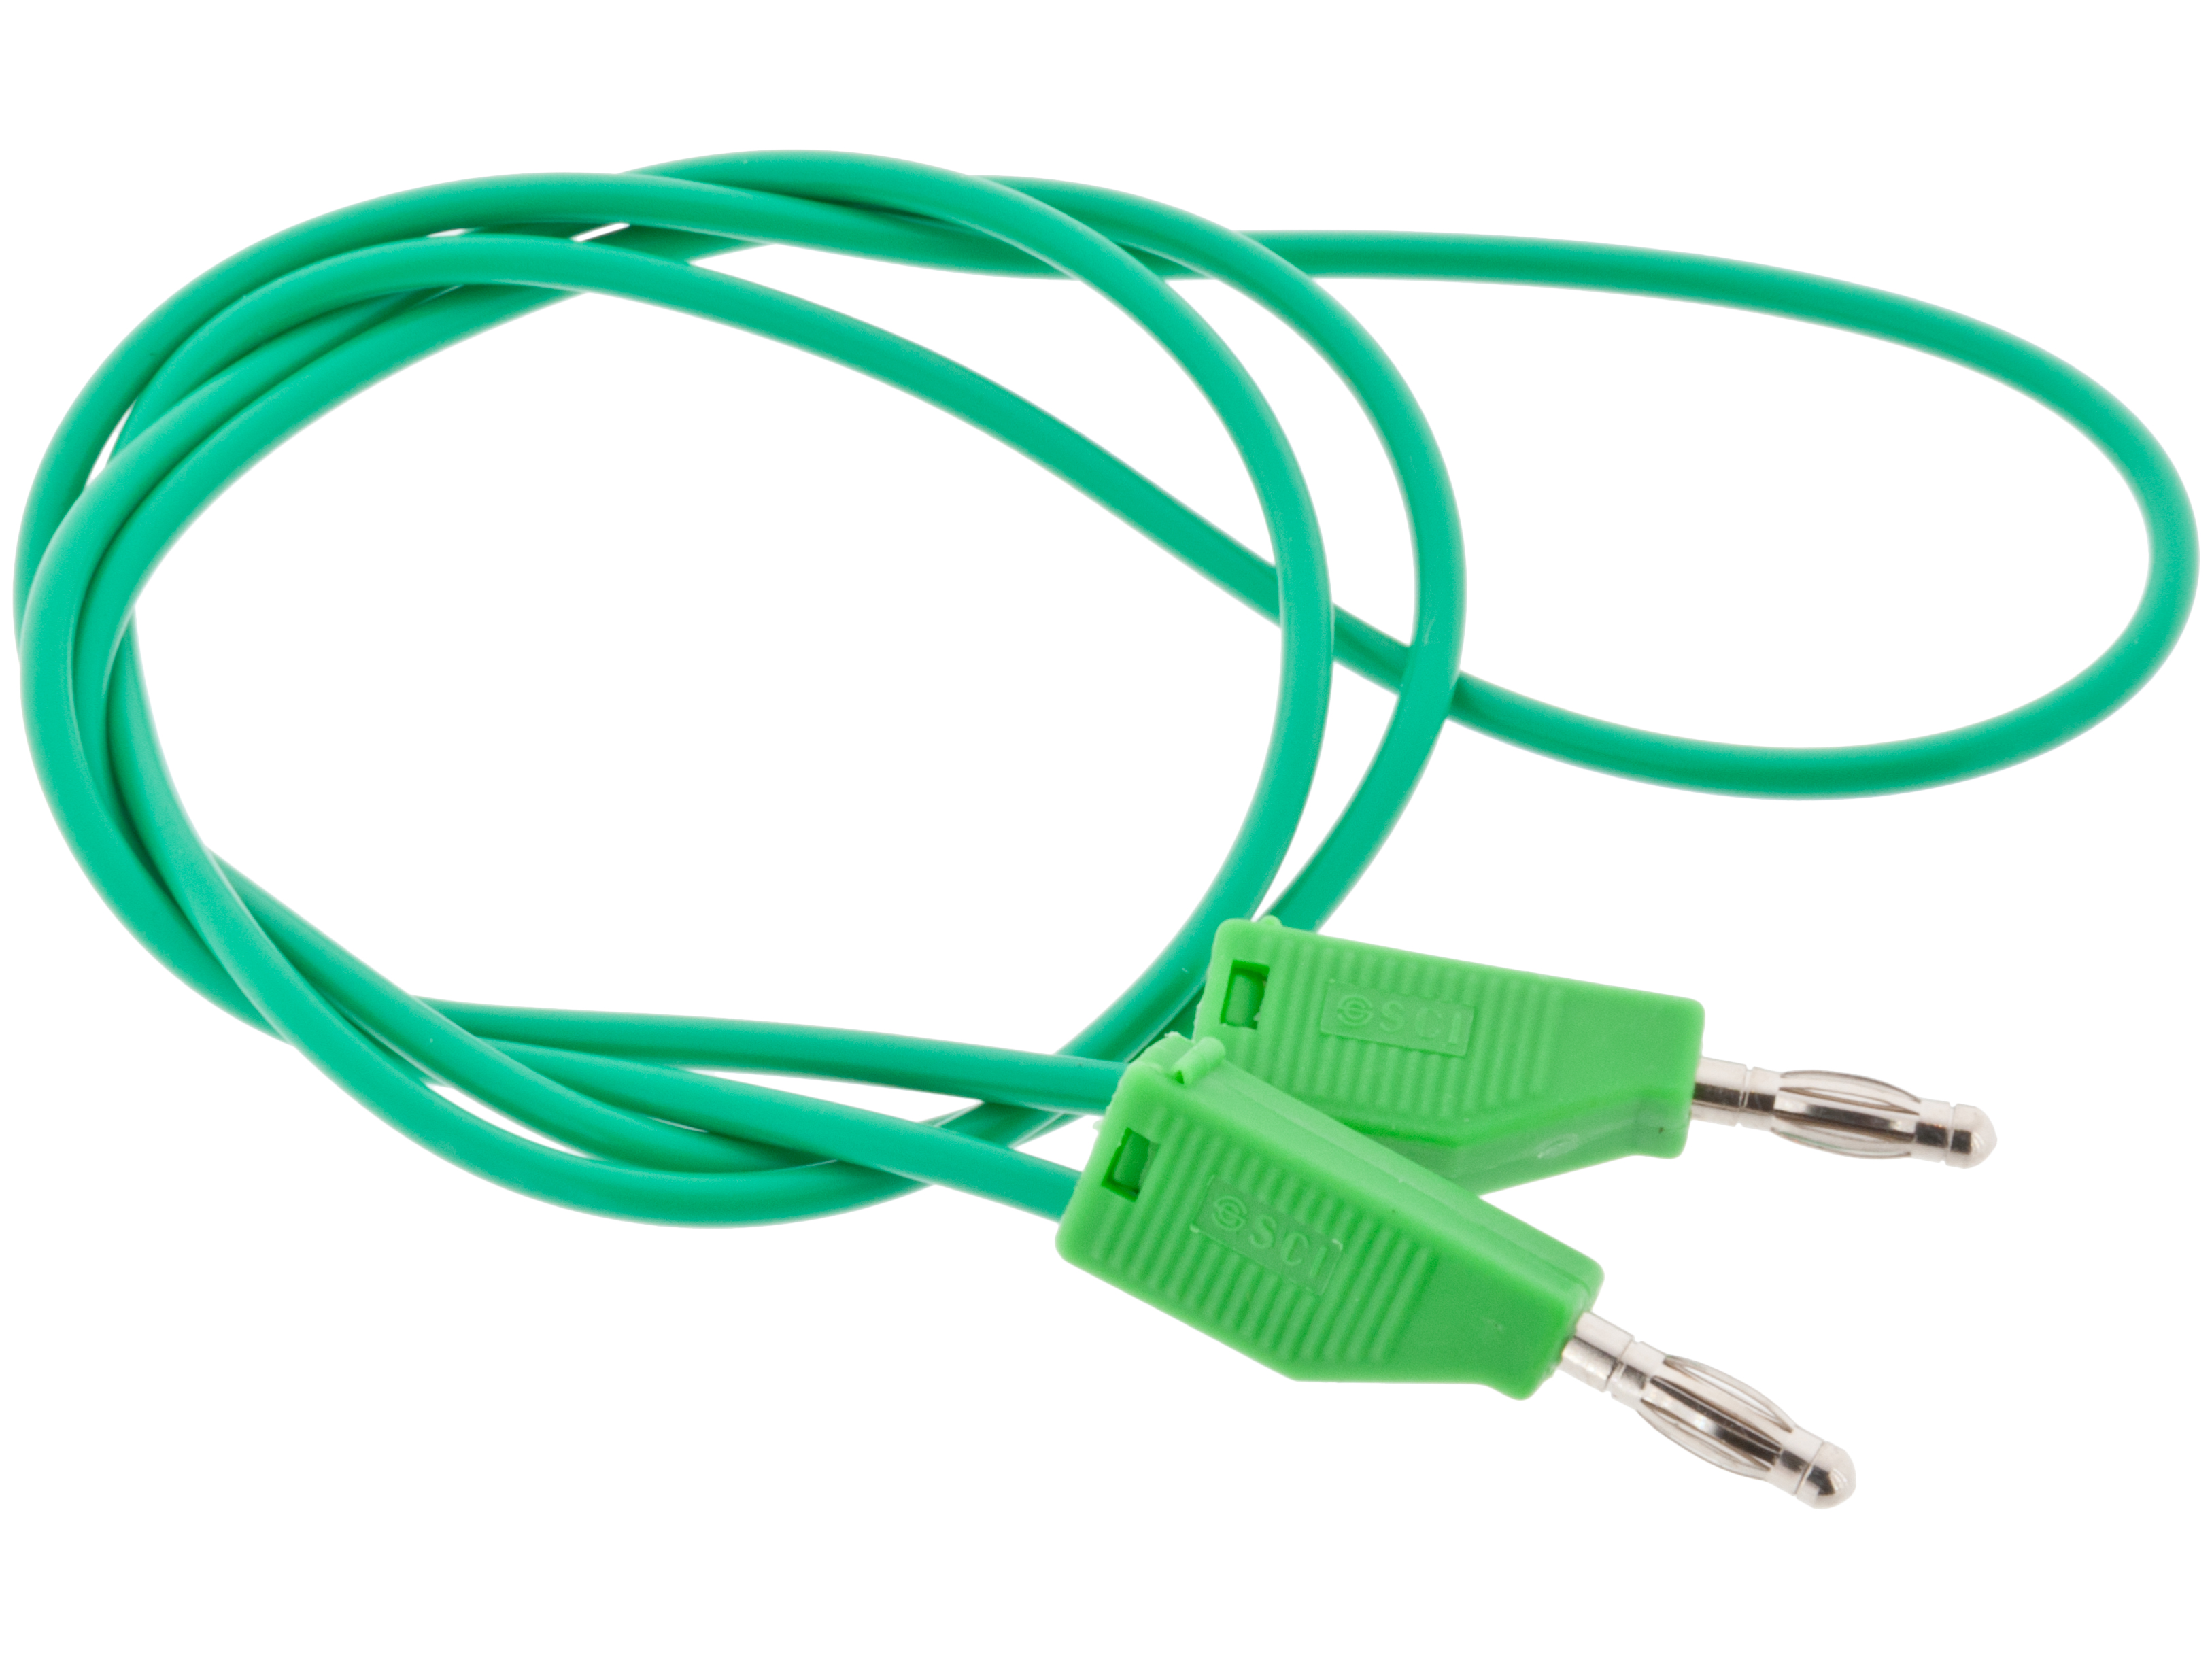 BANANA Cable Green 1M